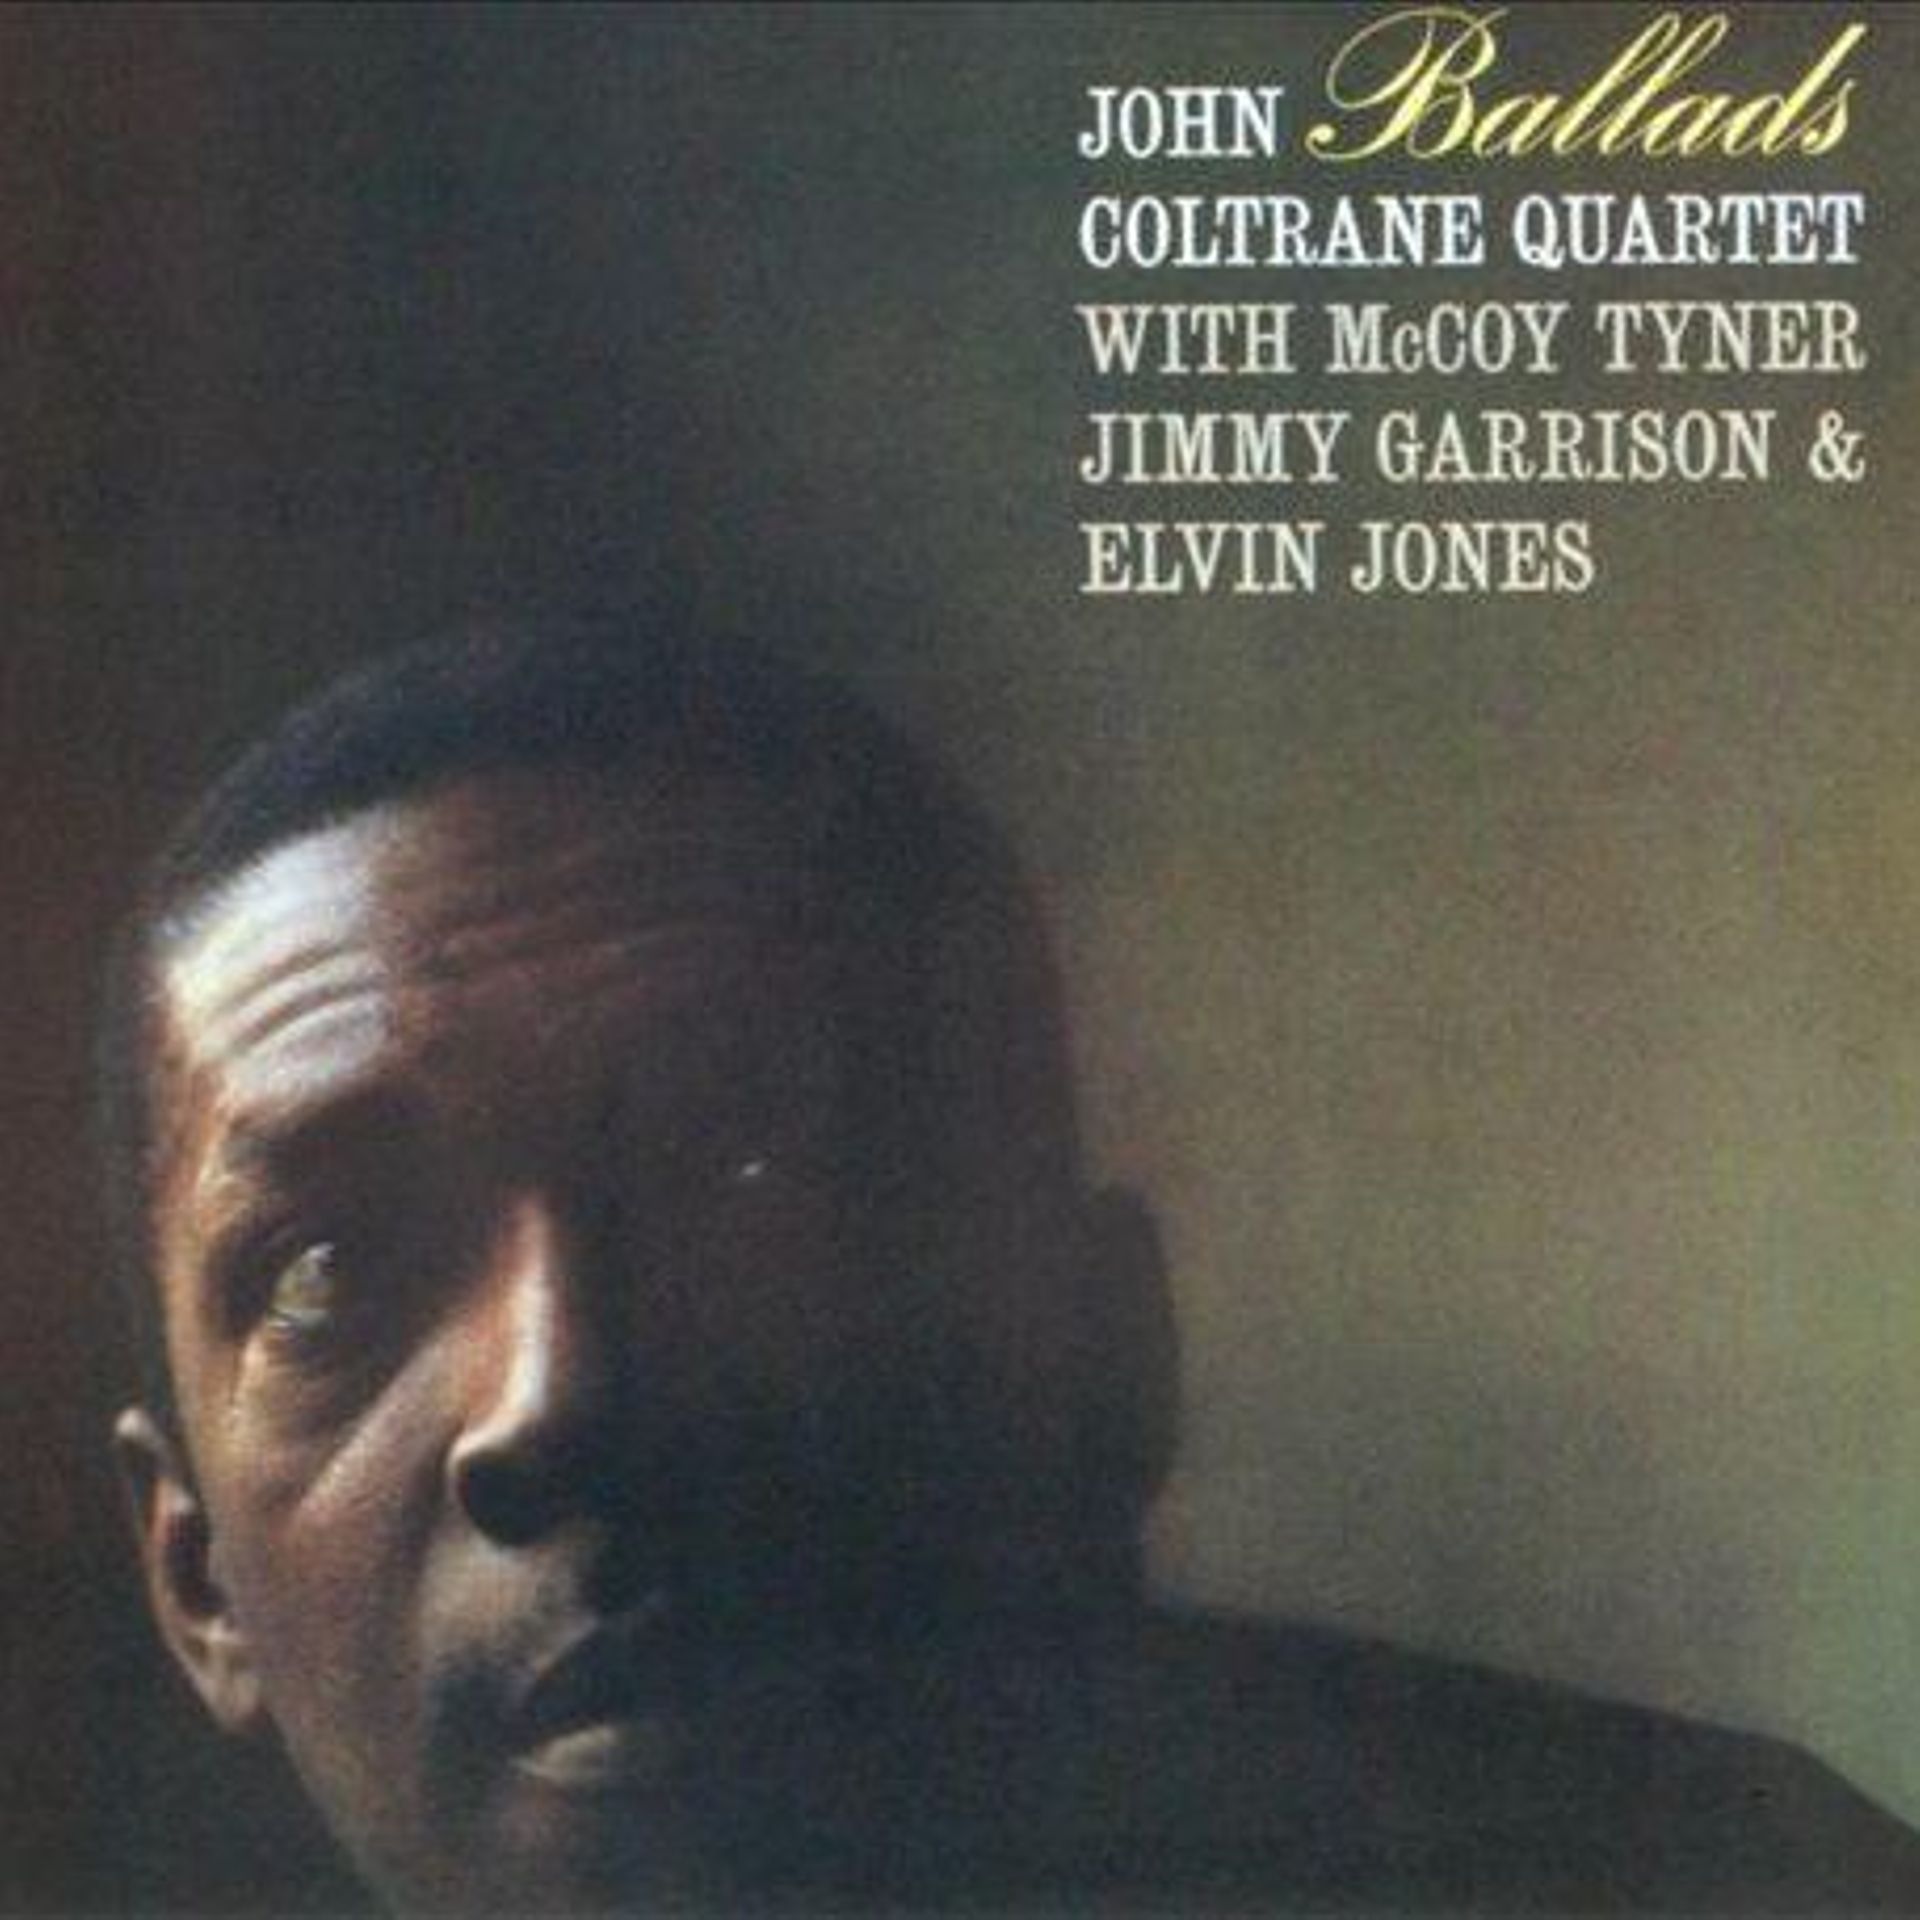 John Coltrane : Ballads (1962)